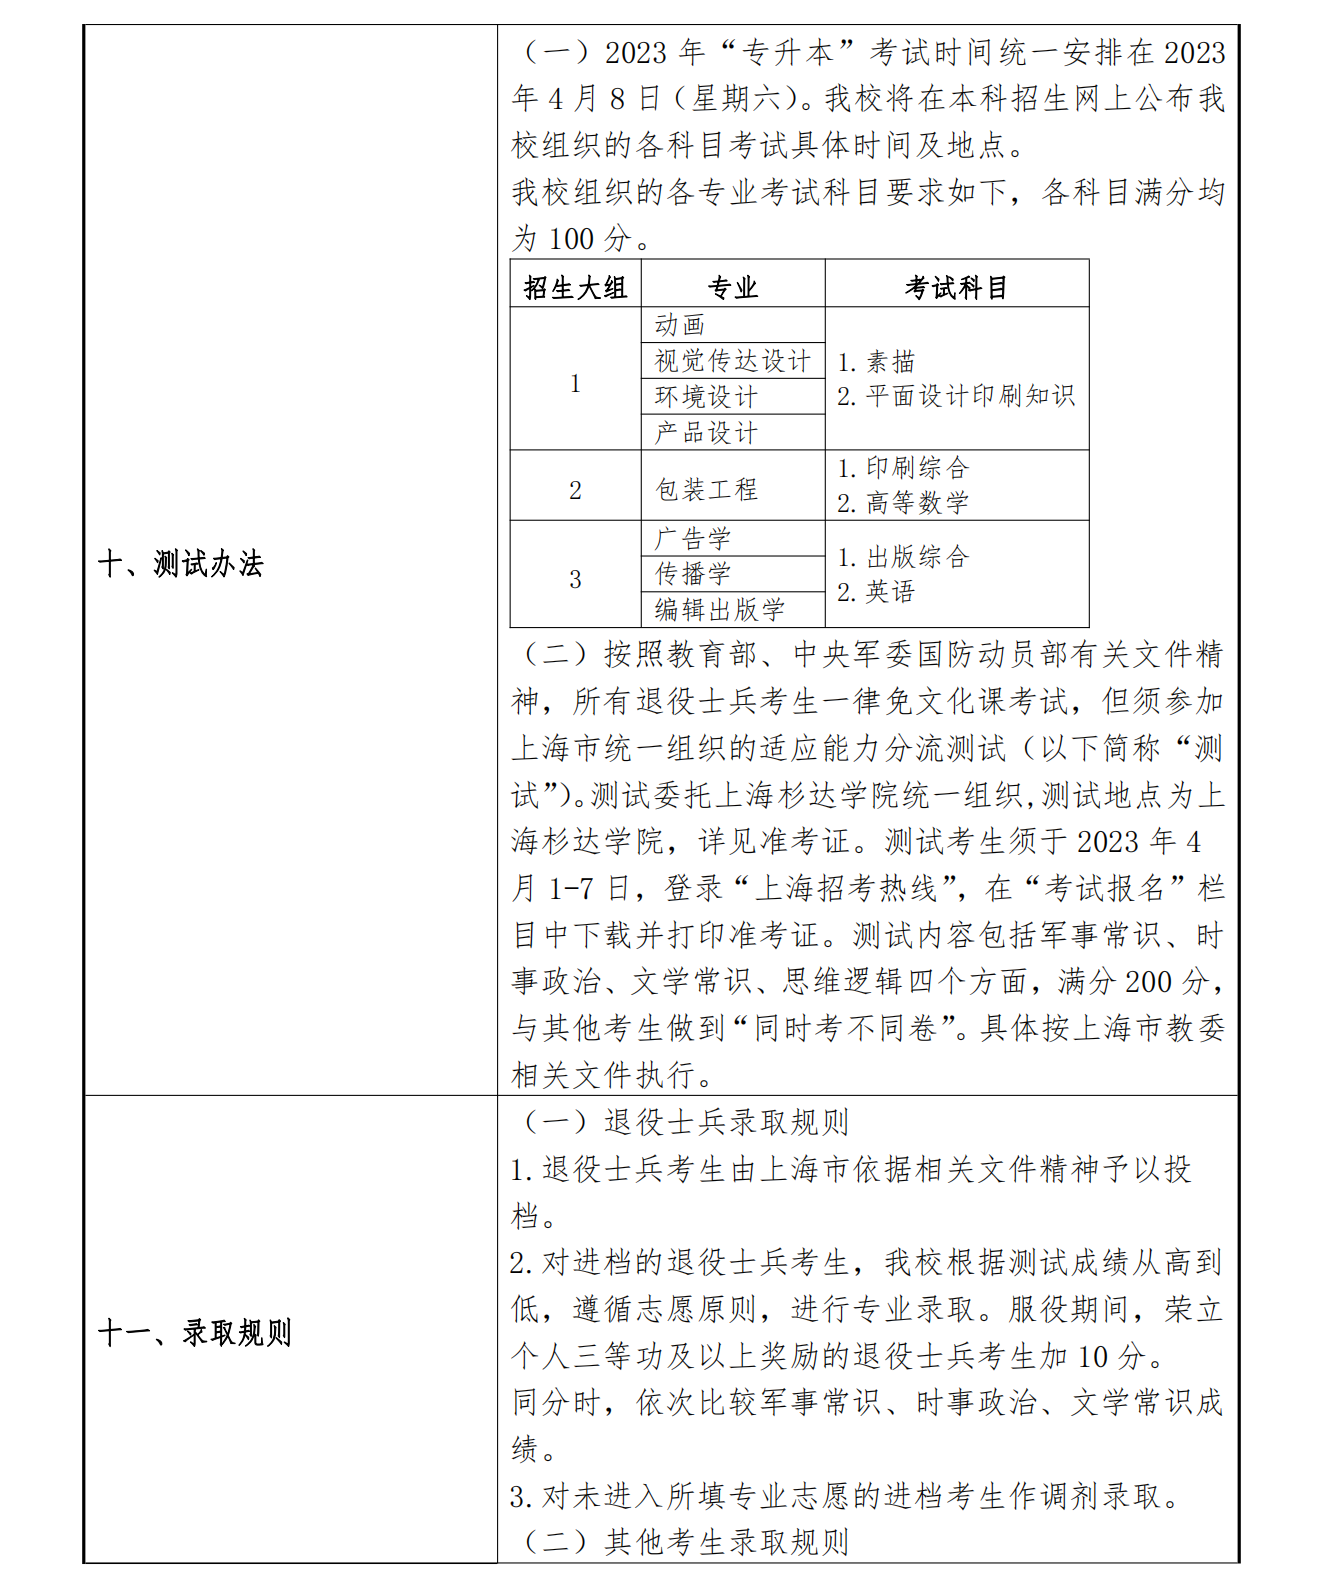 上海理工大学2023年专升本招生章程